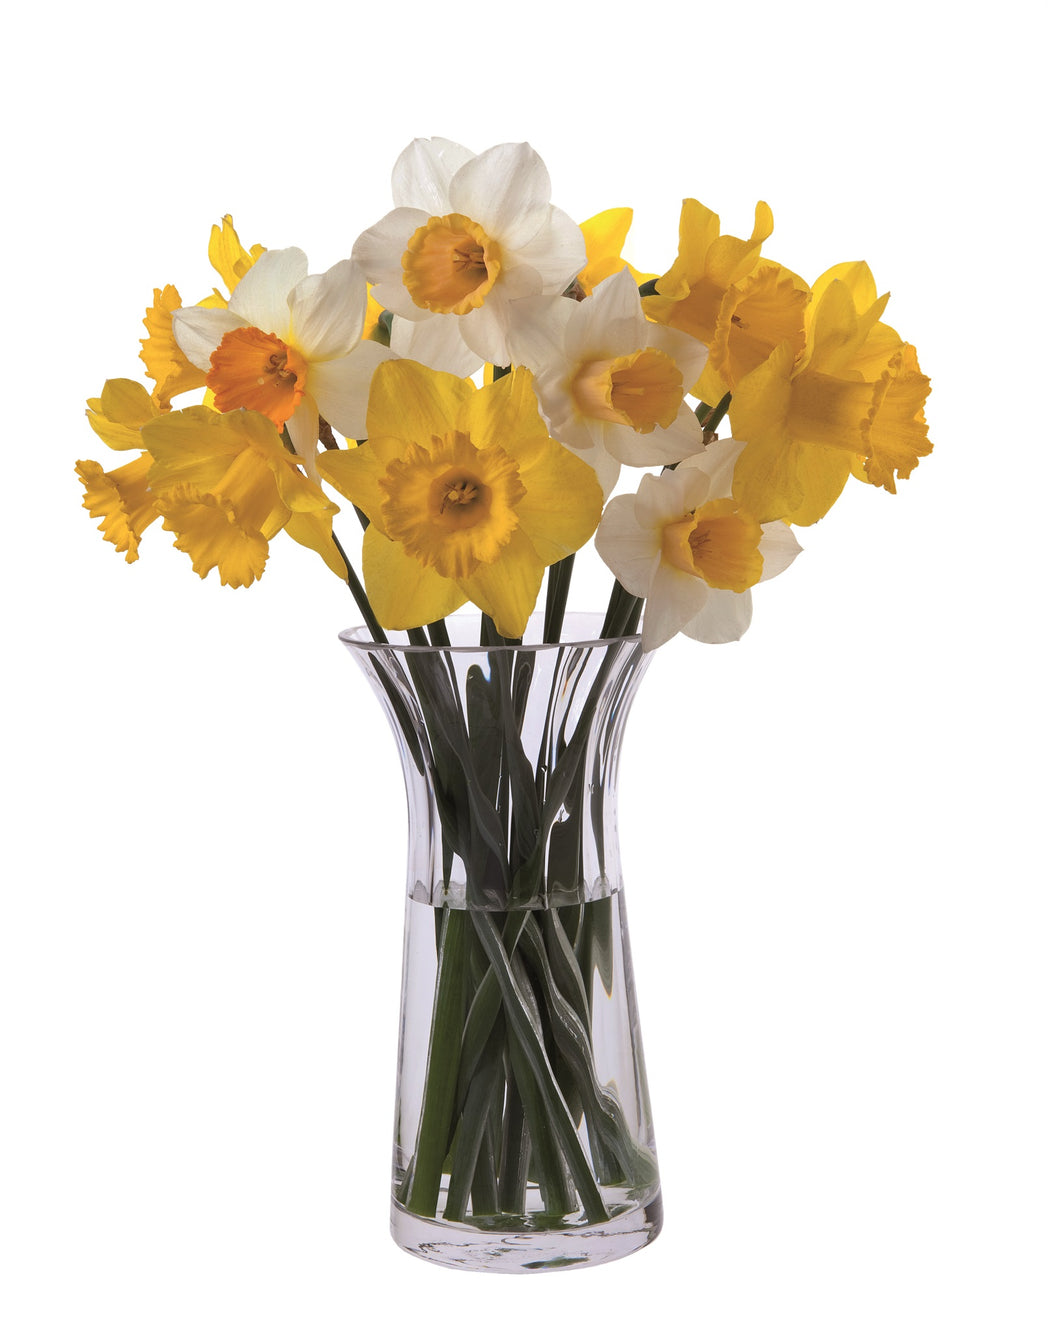 Dartington Florabundance Daffodil Vase